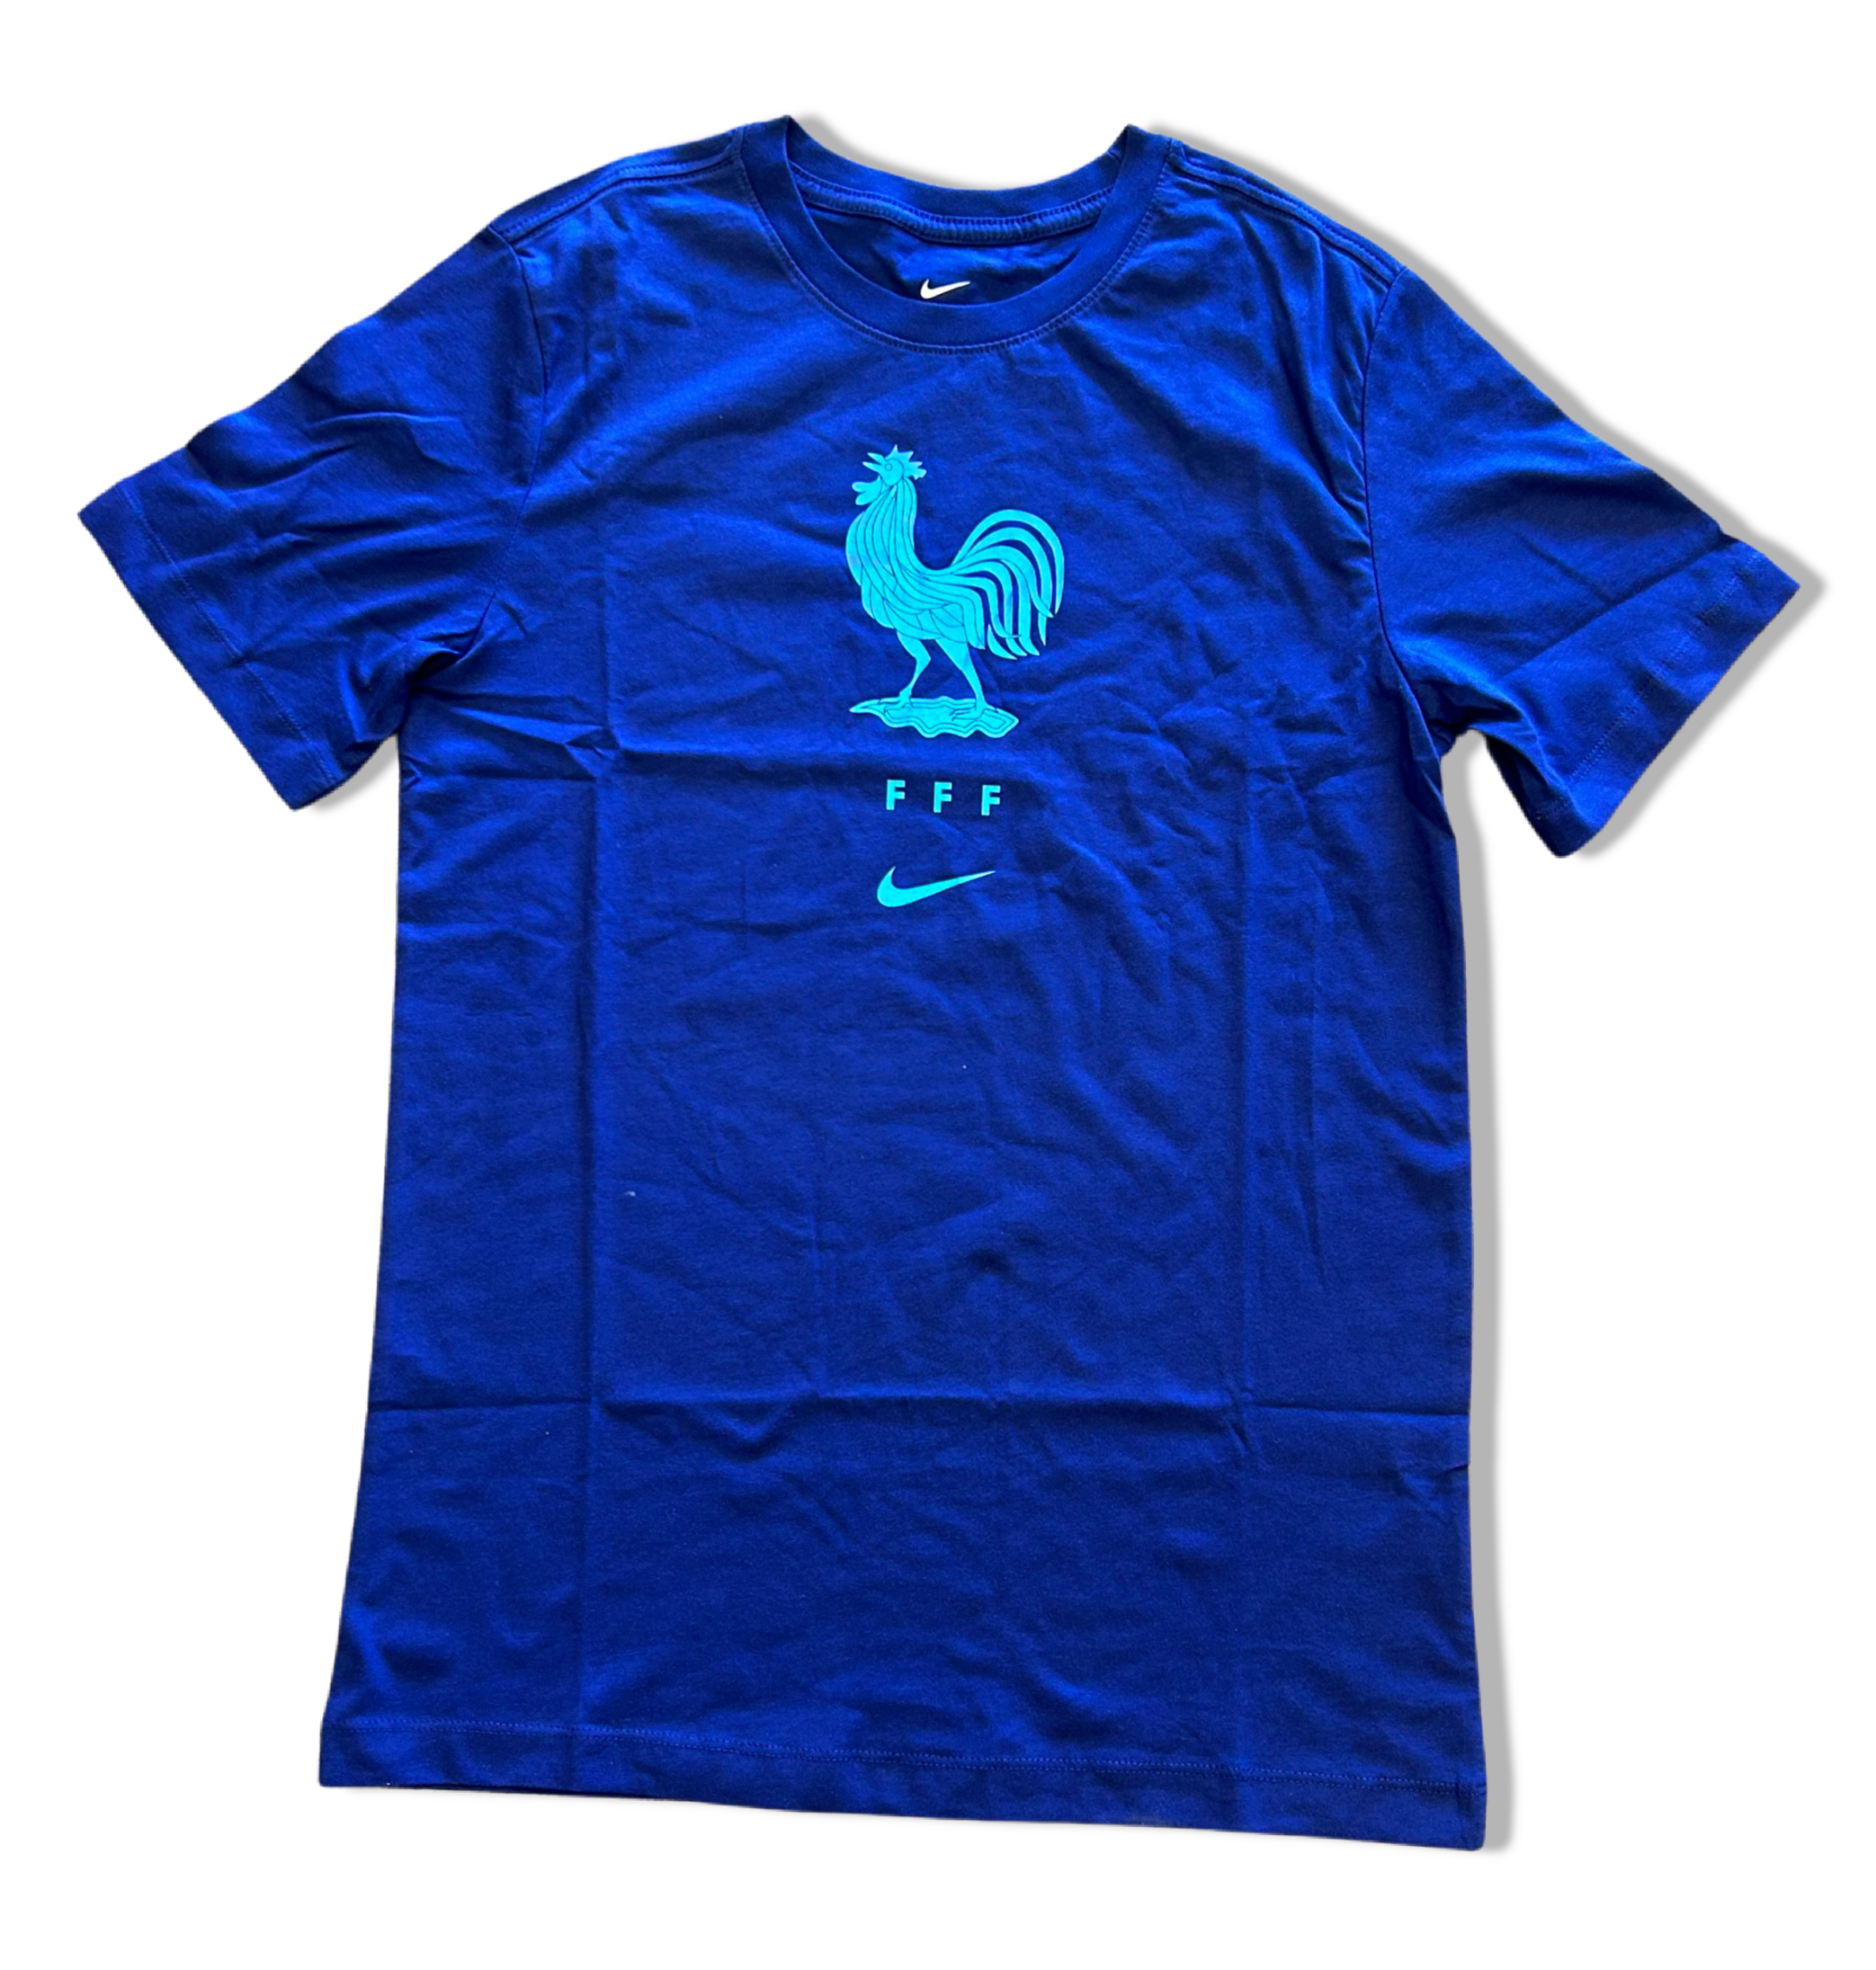 Nike FFF Crest Men's T-Shirt - Navy